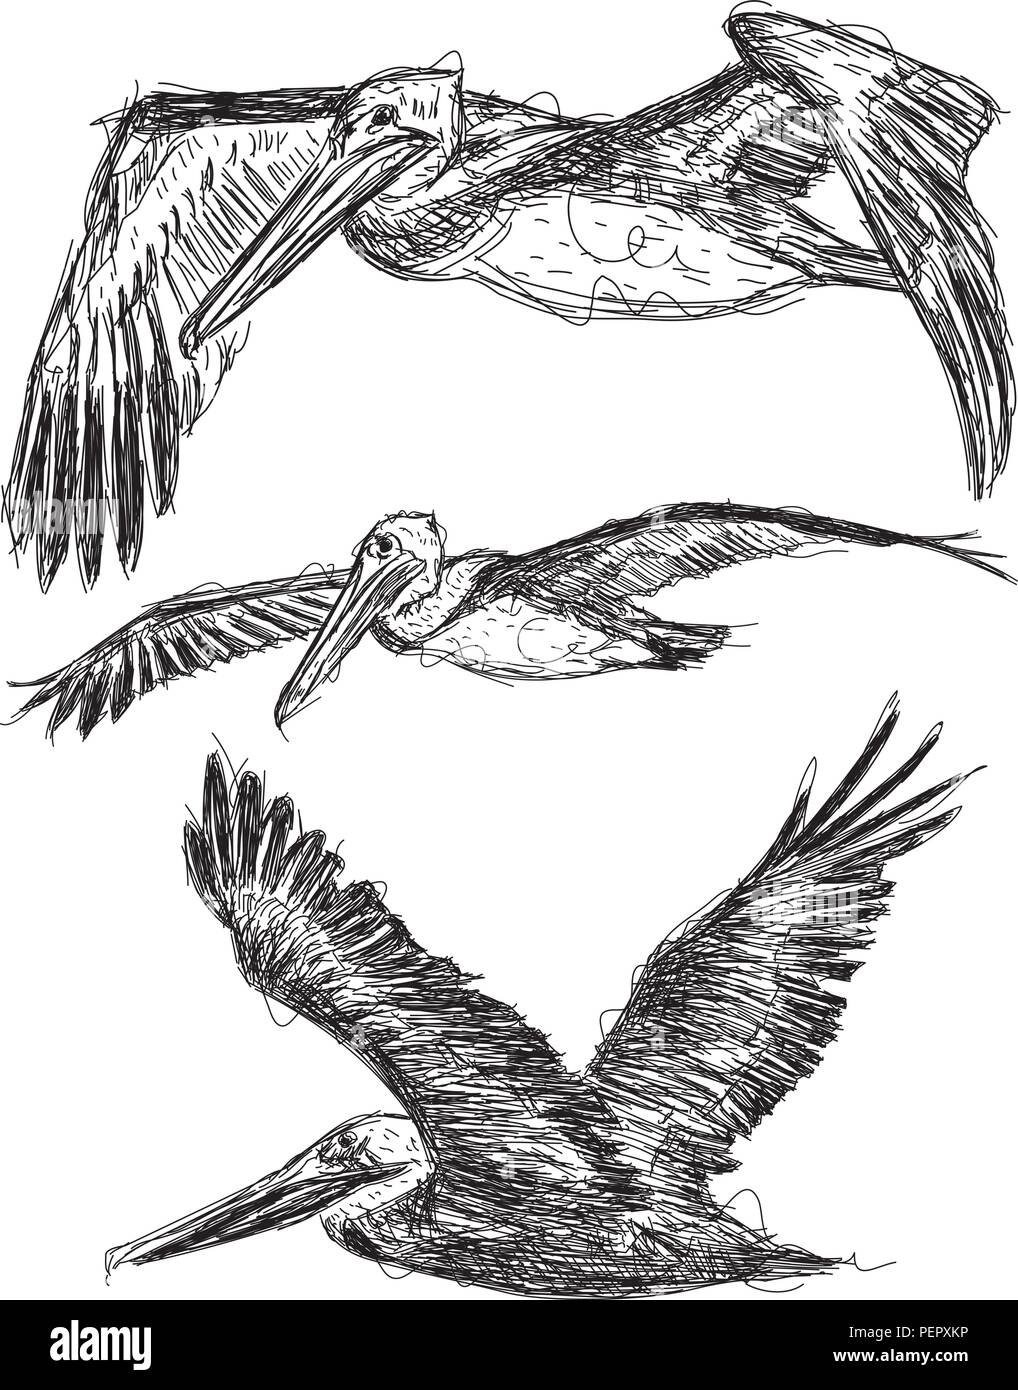 Pelican sketches Sketchy, Brown Pelicans in flight. Stock Vector